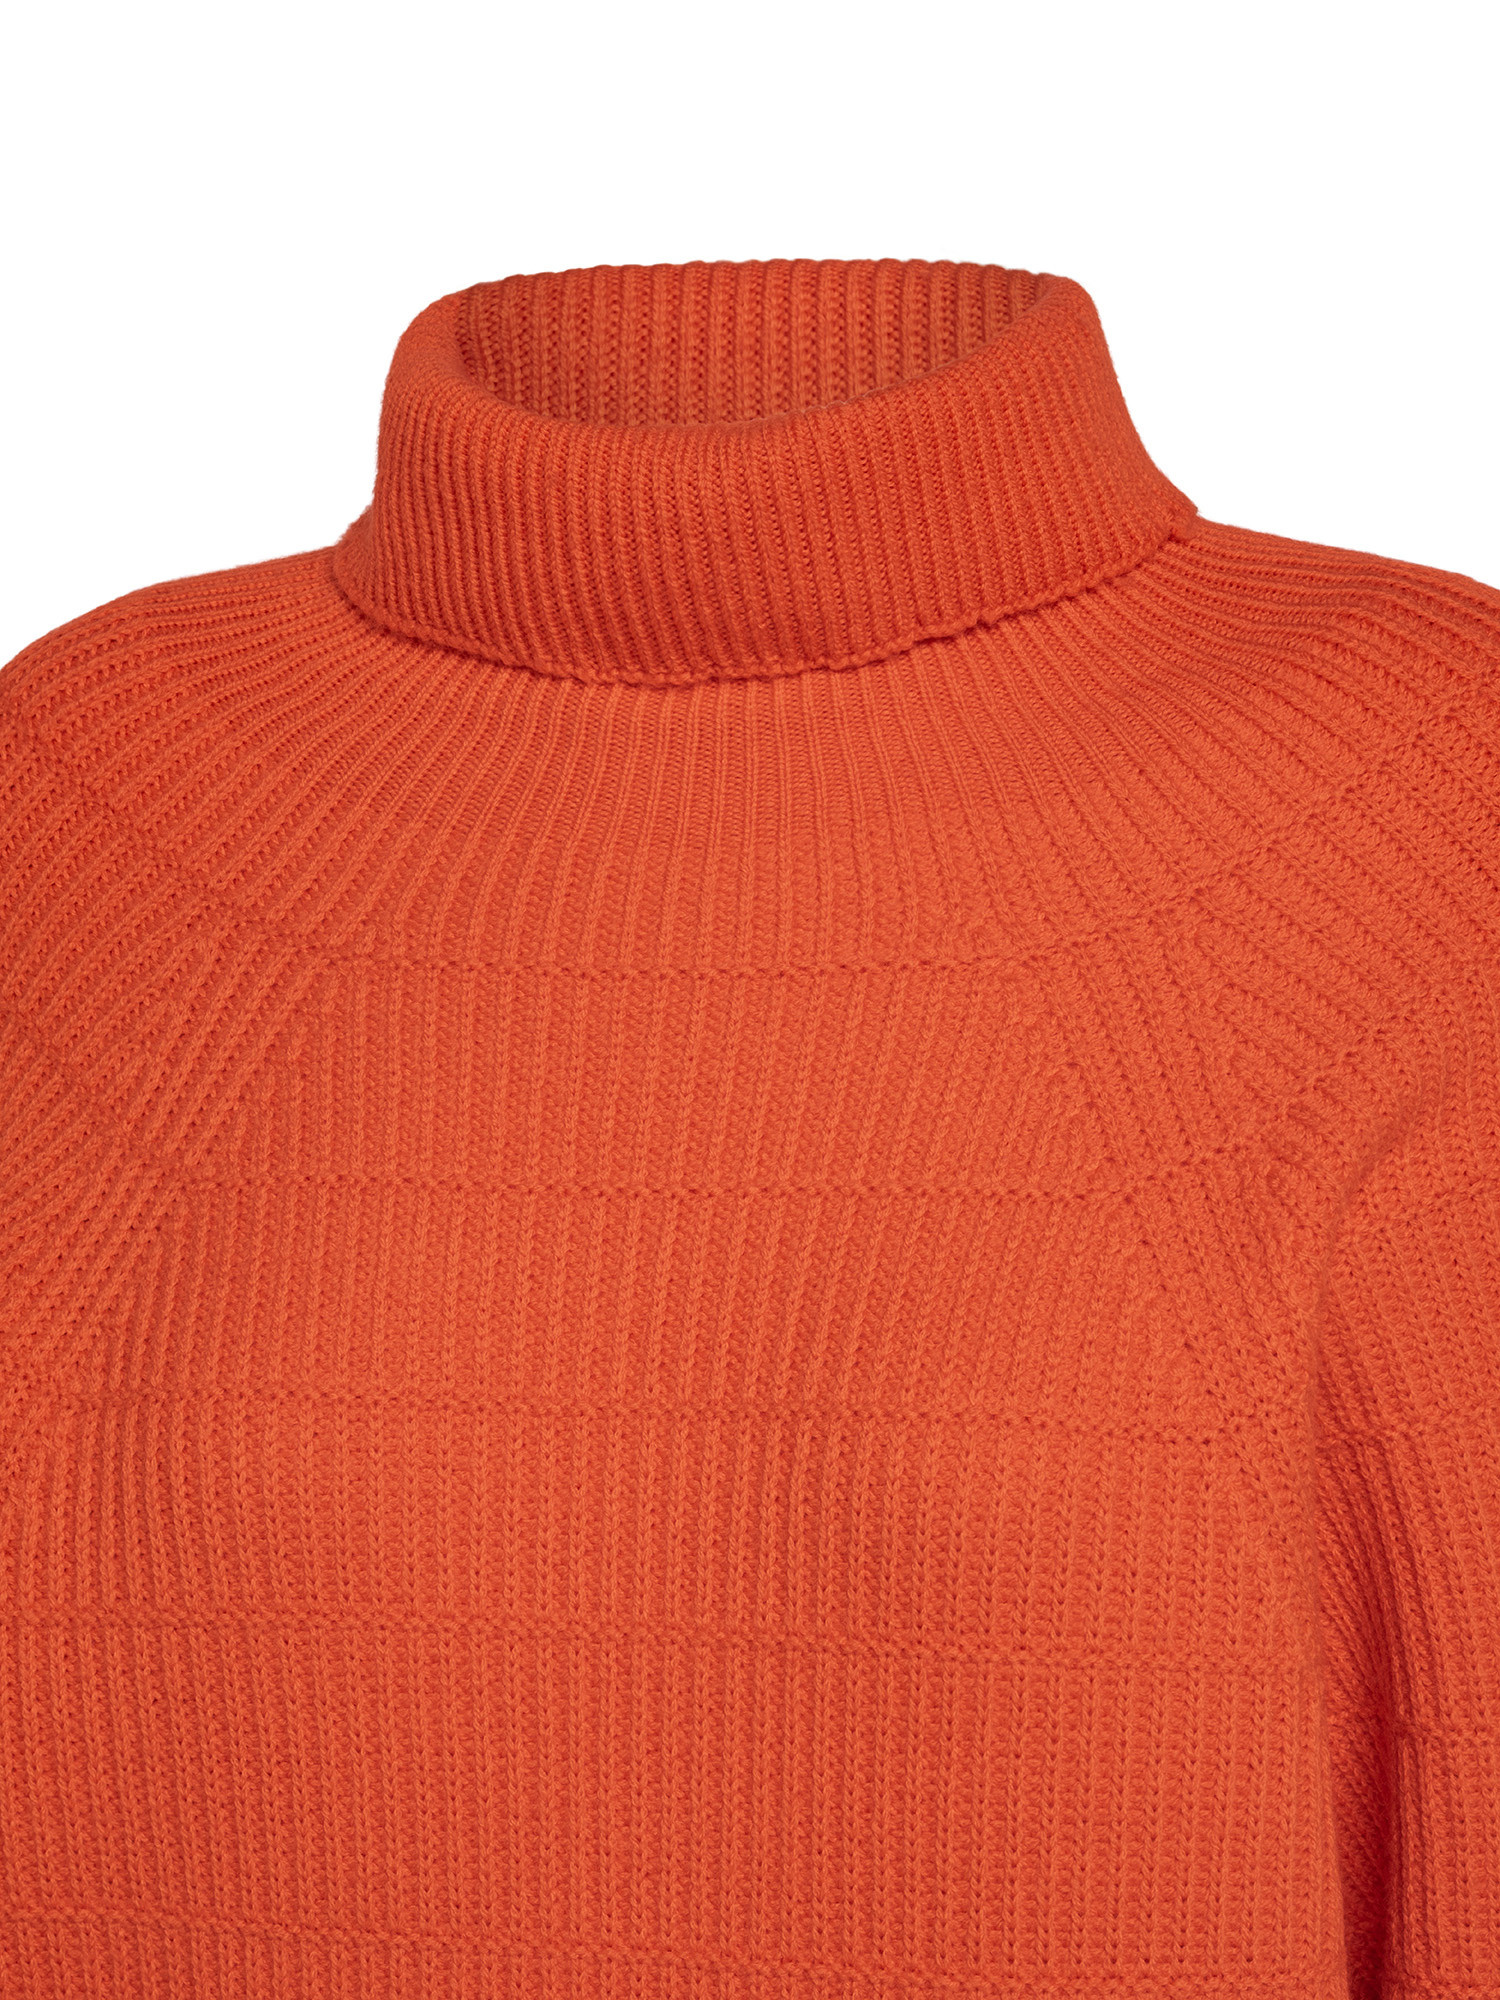 K Collection - Turtleneck pullover, Orange, large image number 2